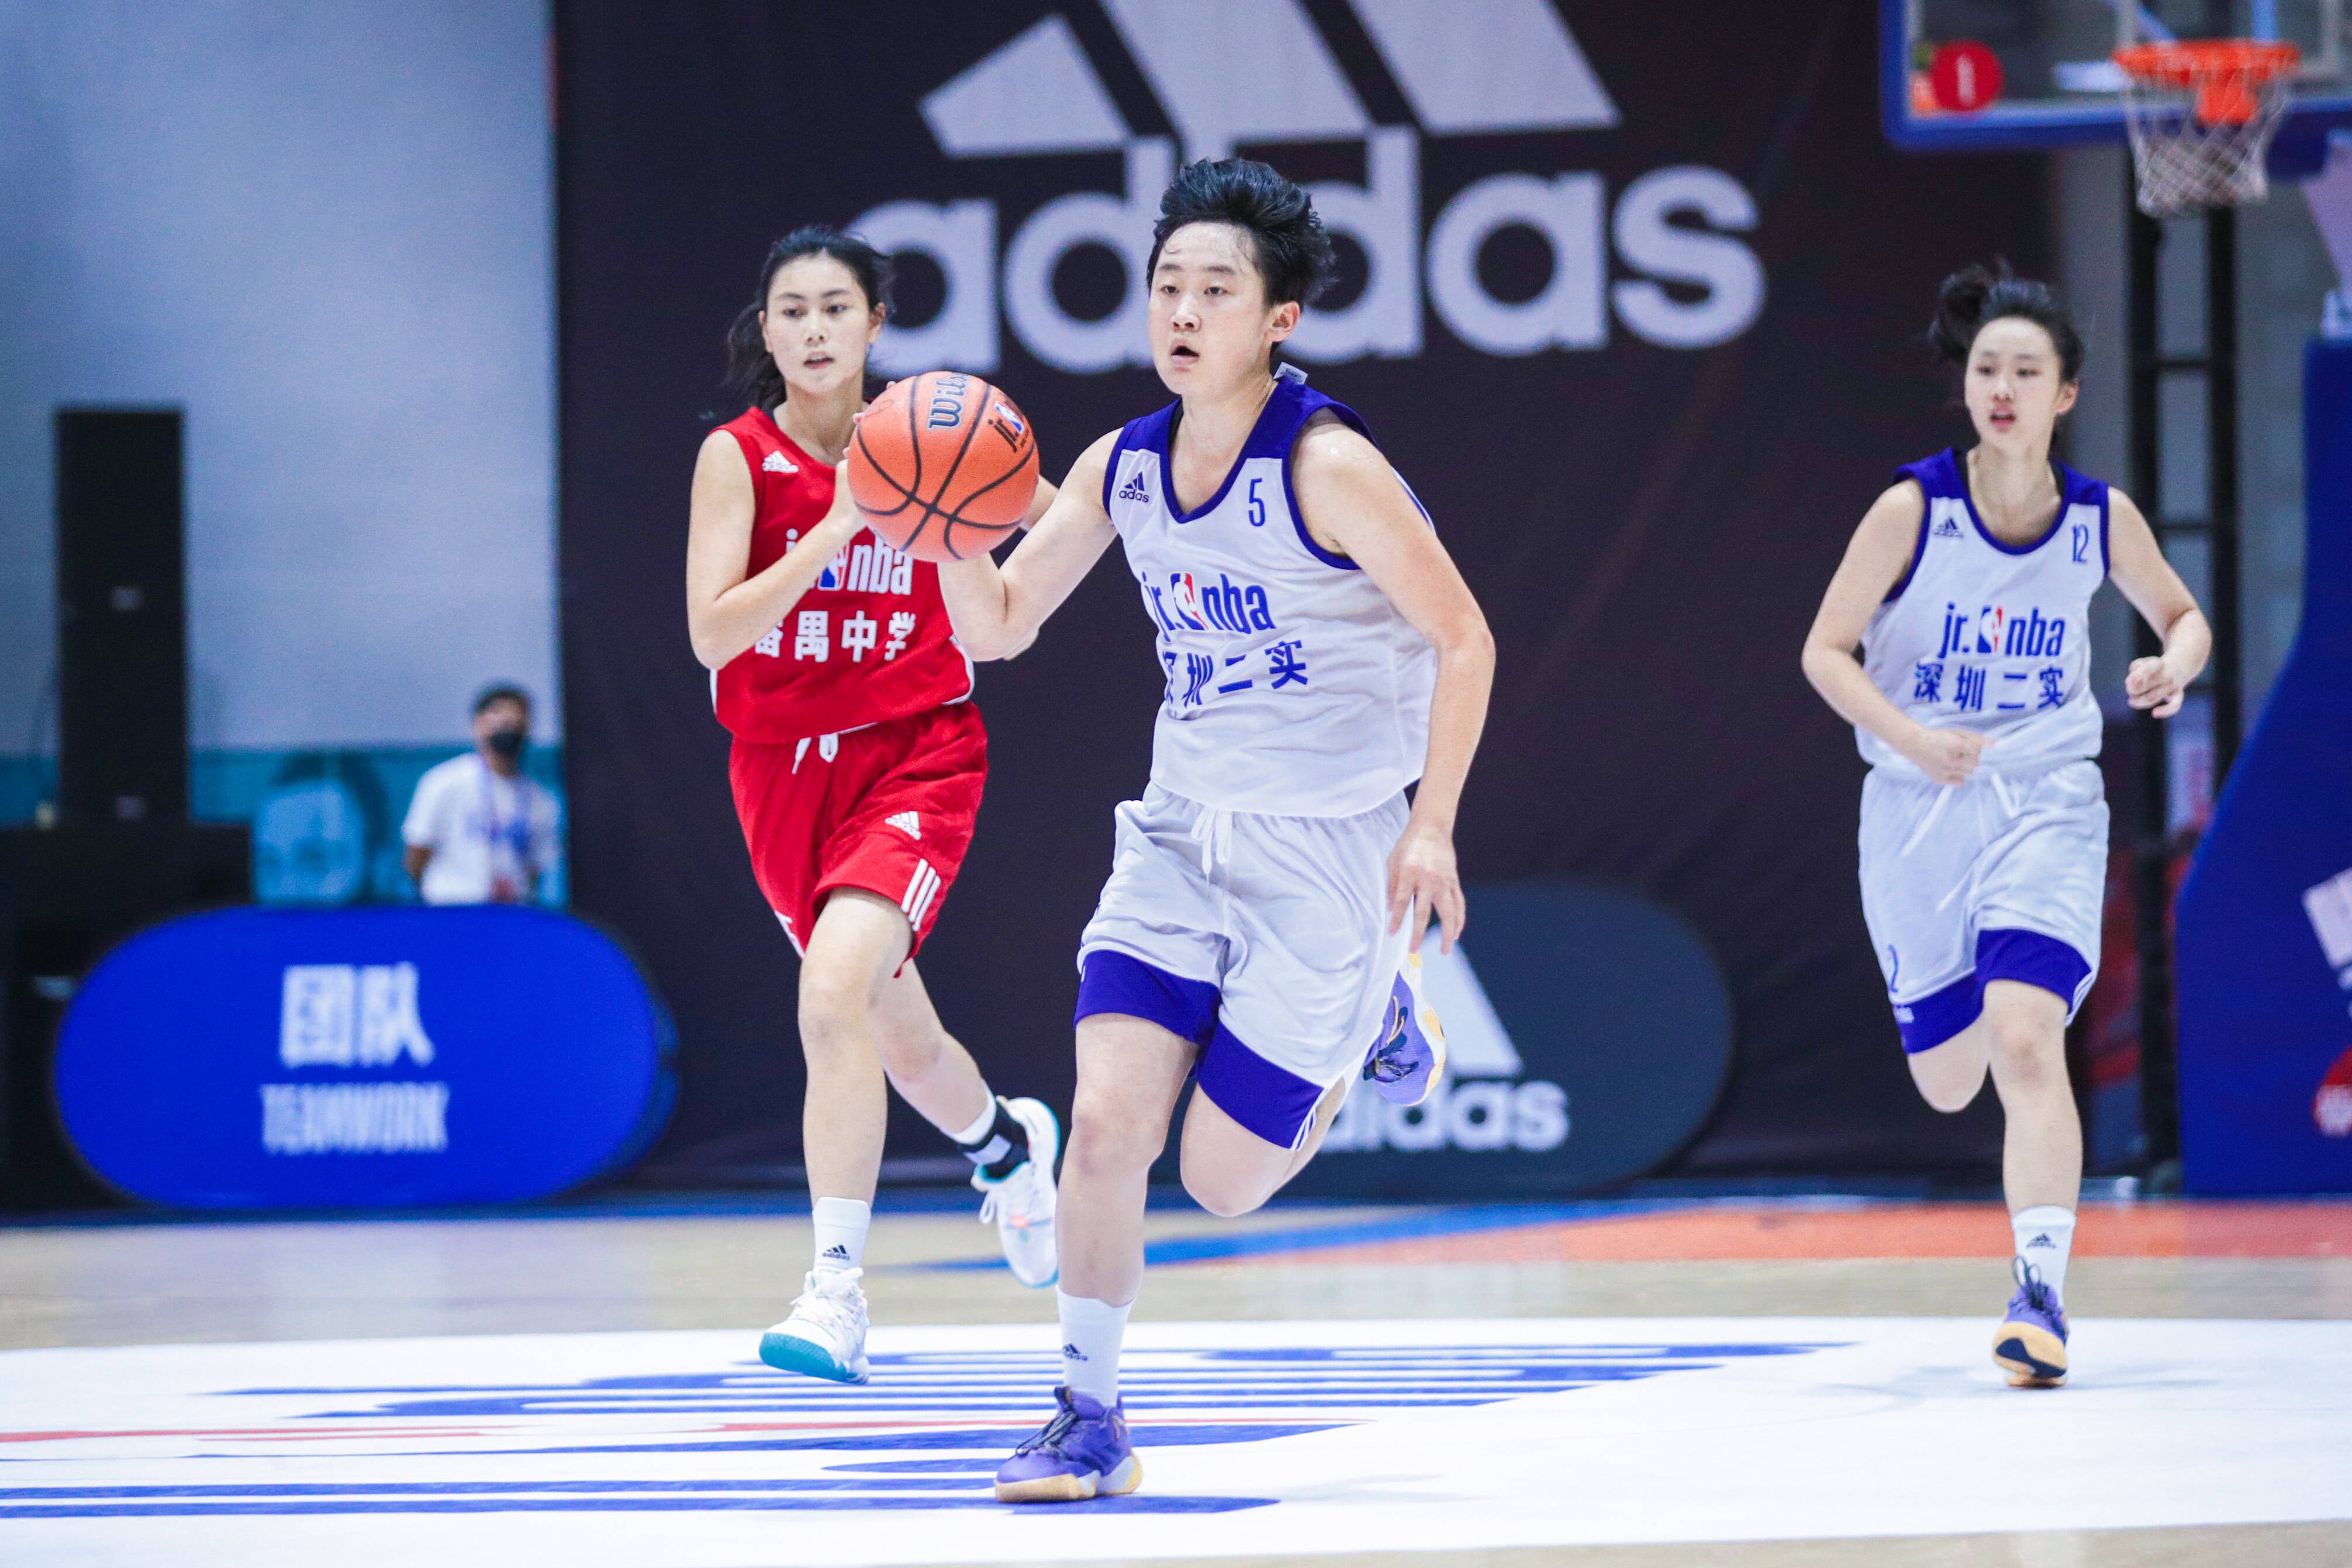 2022年广东省中学生篮球精英赛暨Jr. NBA联赛@广东 圆满落幕 —— 战至巅峰，没有不可能